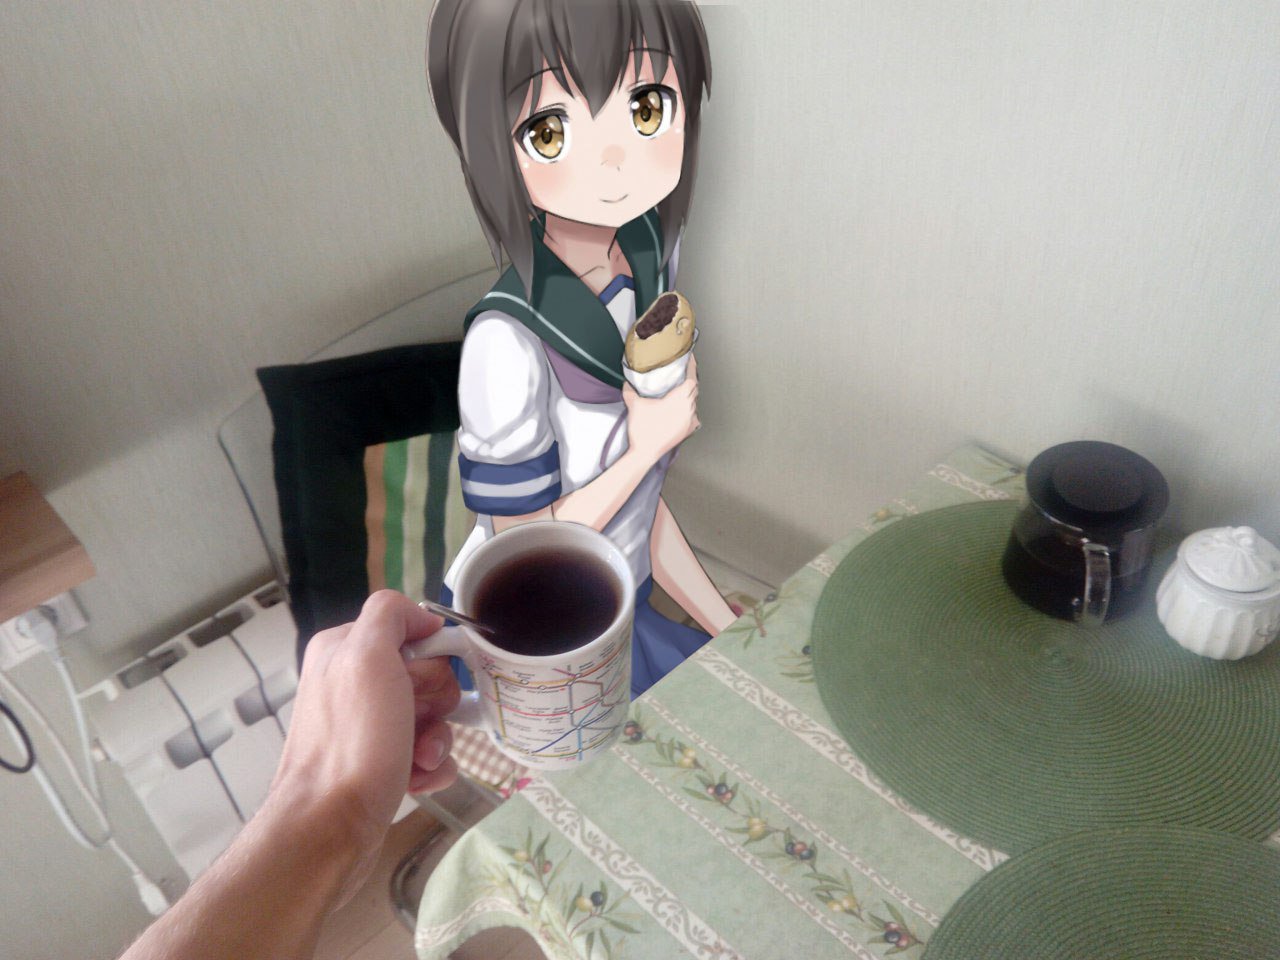 Phtoshopla kahvaltı masasına oturtulmuş anime kız. (Bu tuhaf görüntü en iyi böyle anlatılabilirdi.)